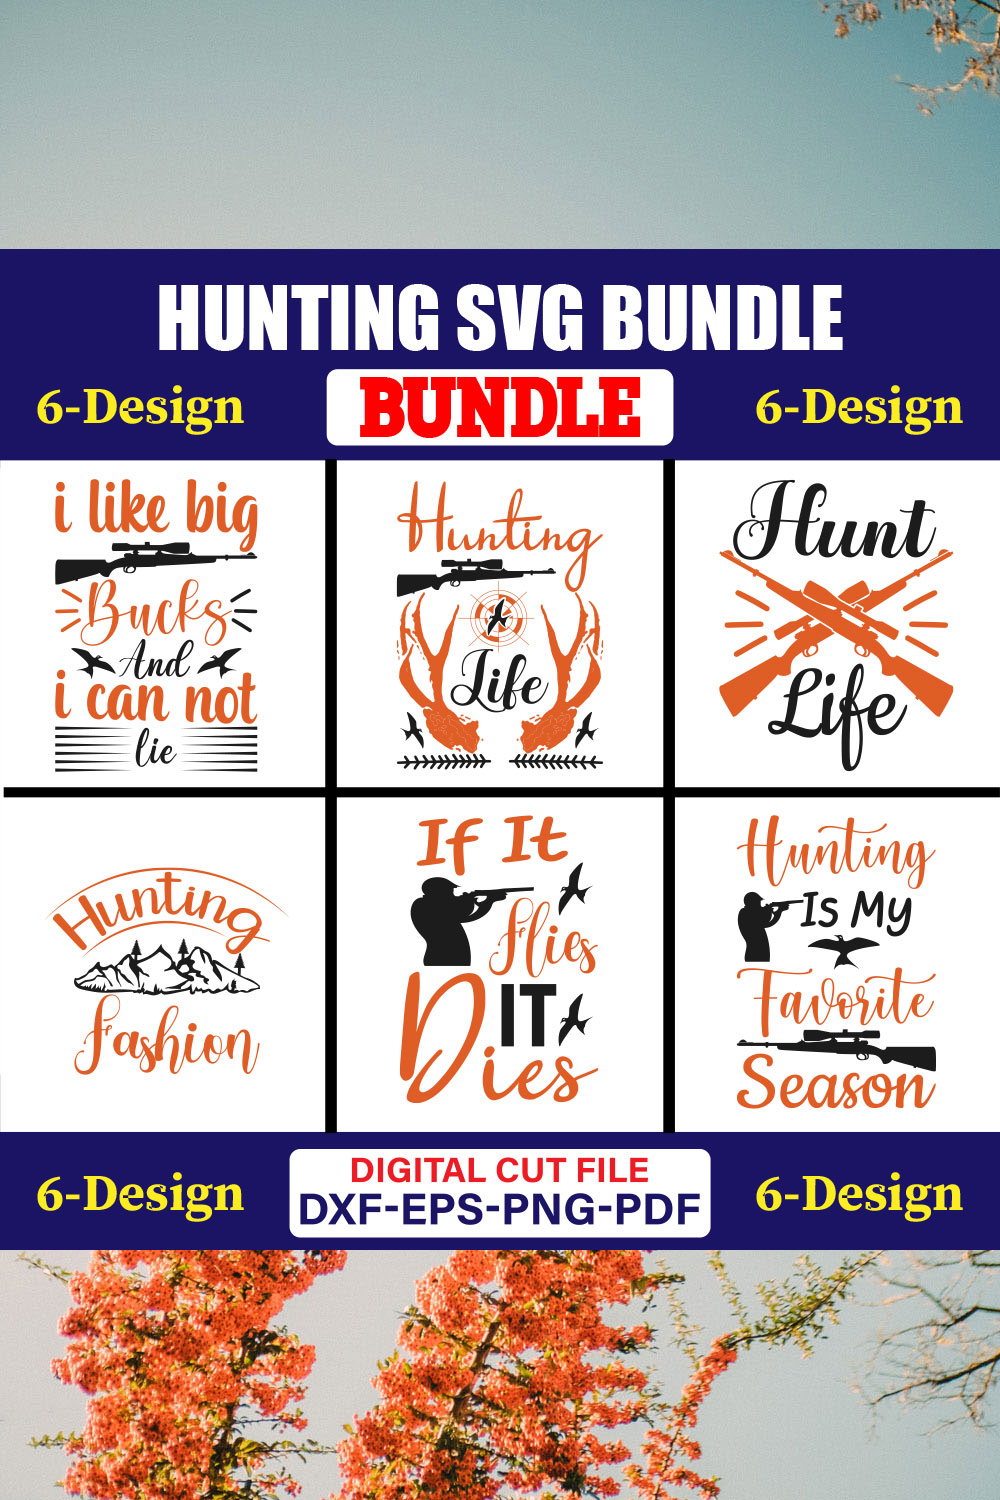 Hunting SVG T-shirt Design Bundle Vol-04 pinterest preview image.